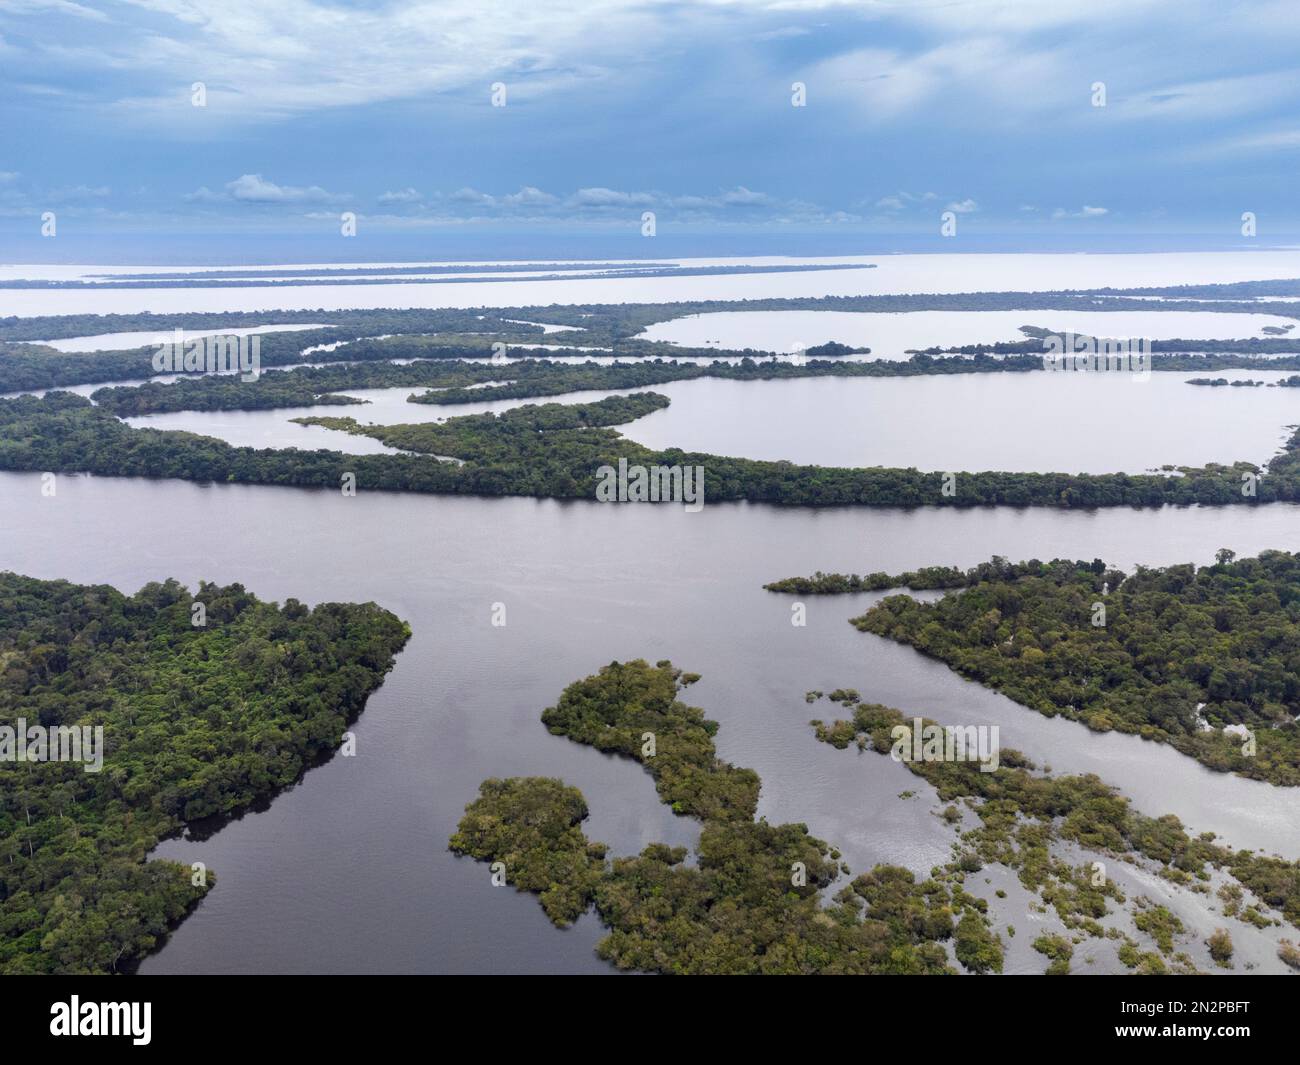 Îles Anavilhanas, le plus grand archipel fluvial du monde. Rio Negro. Vue aérienne. Parc national d'Anavilhanas, couloir écologique de l'Amazonie centrale, Brésil Banque D'Images